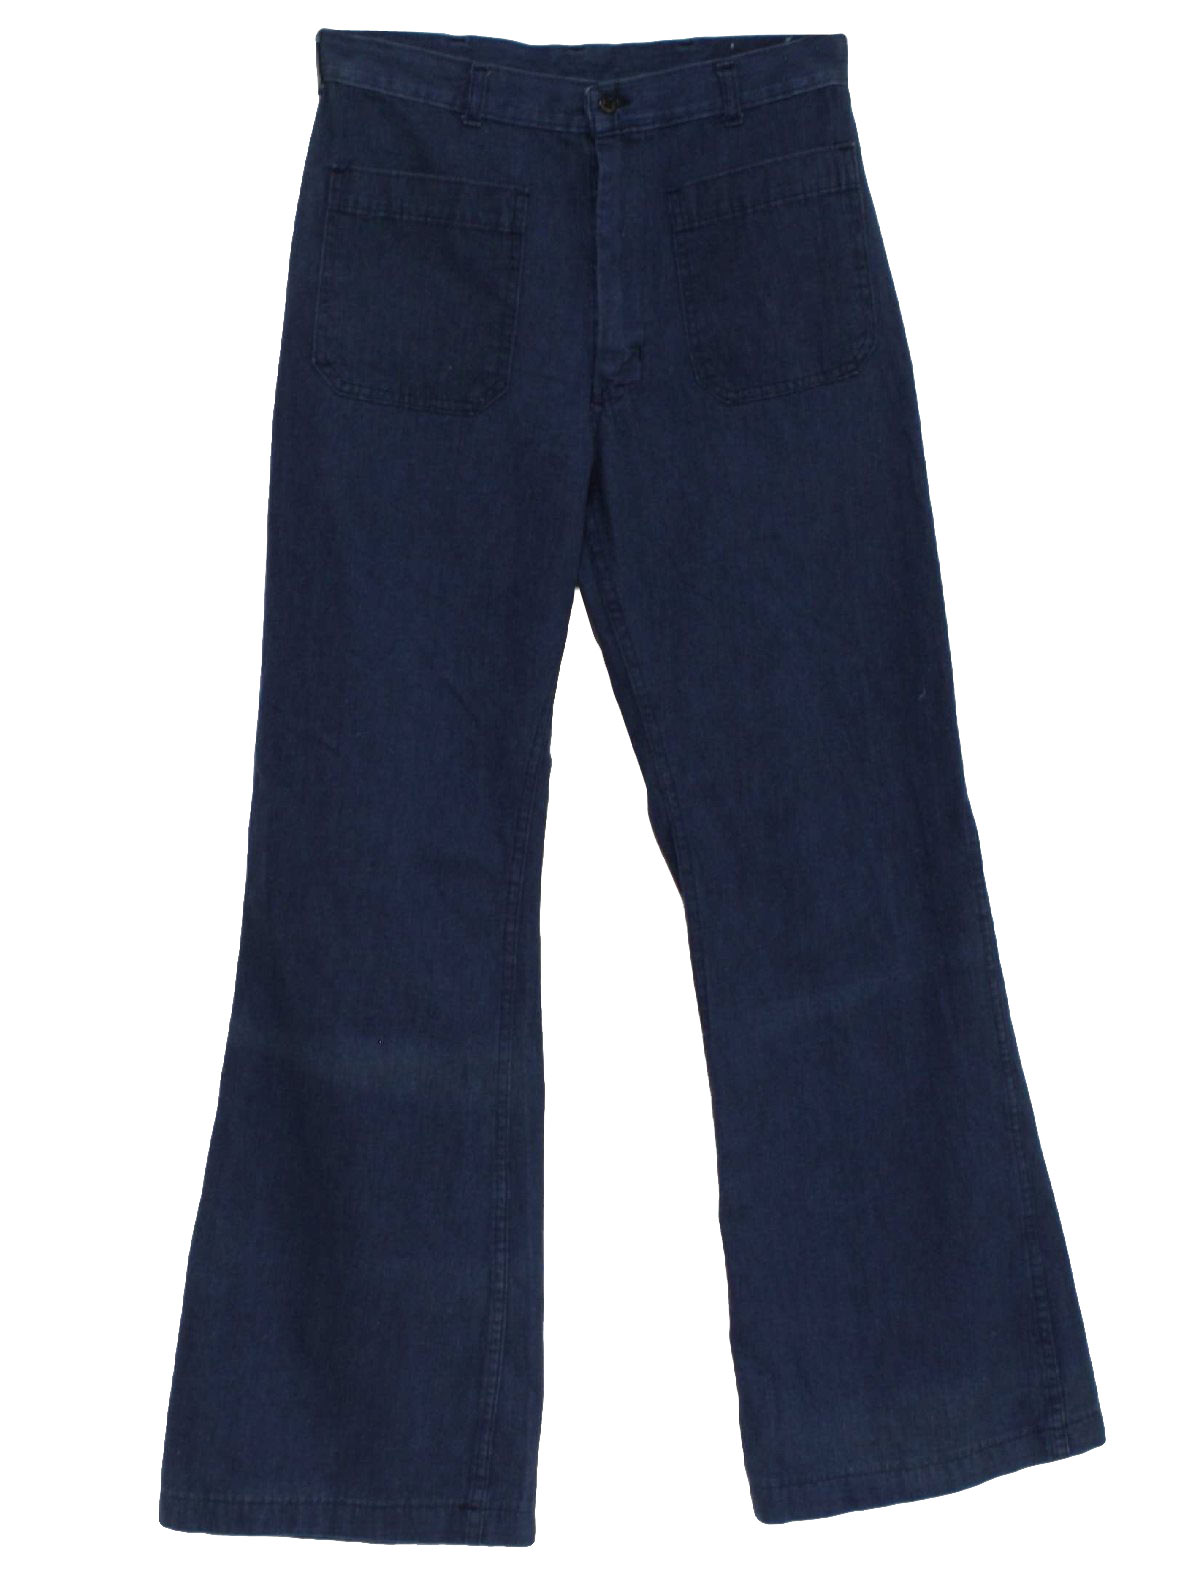 Seventies Vintage Bellbottom Pants: 70s -Wilsew Inc.- Mens denim blue ...